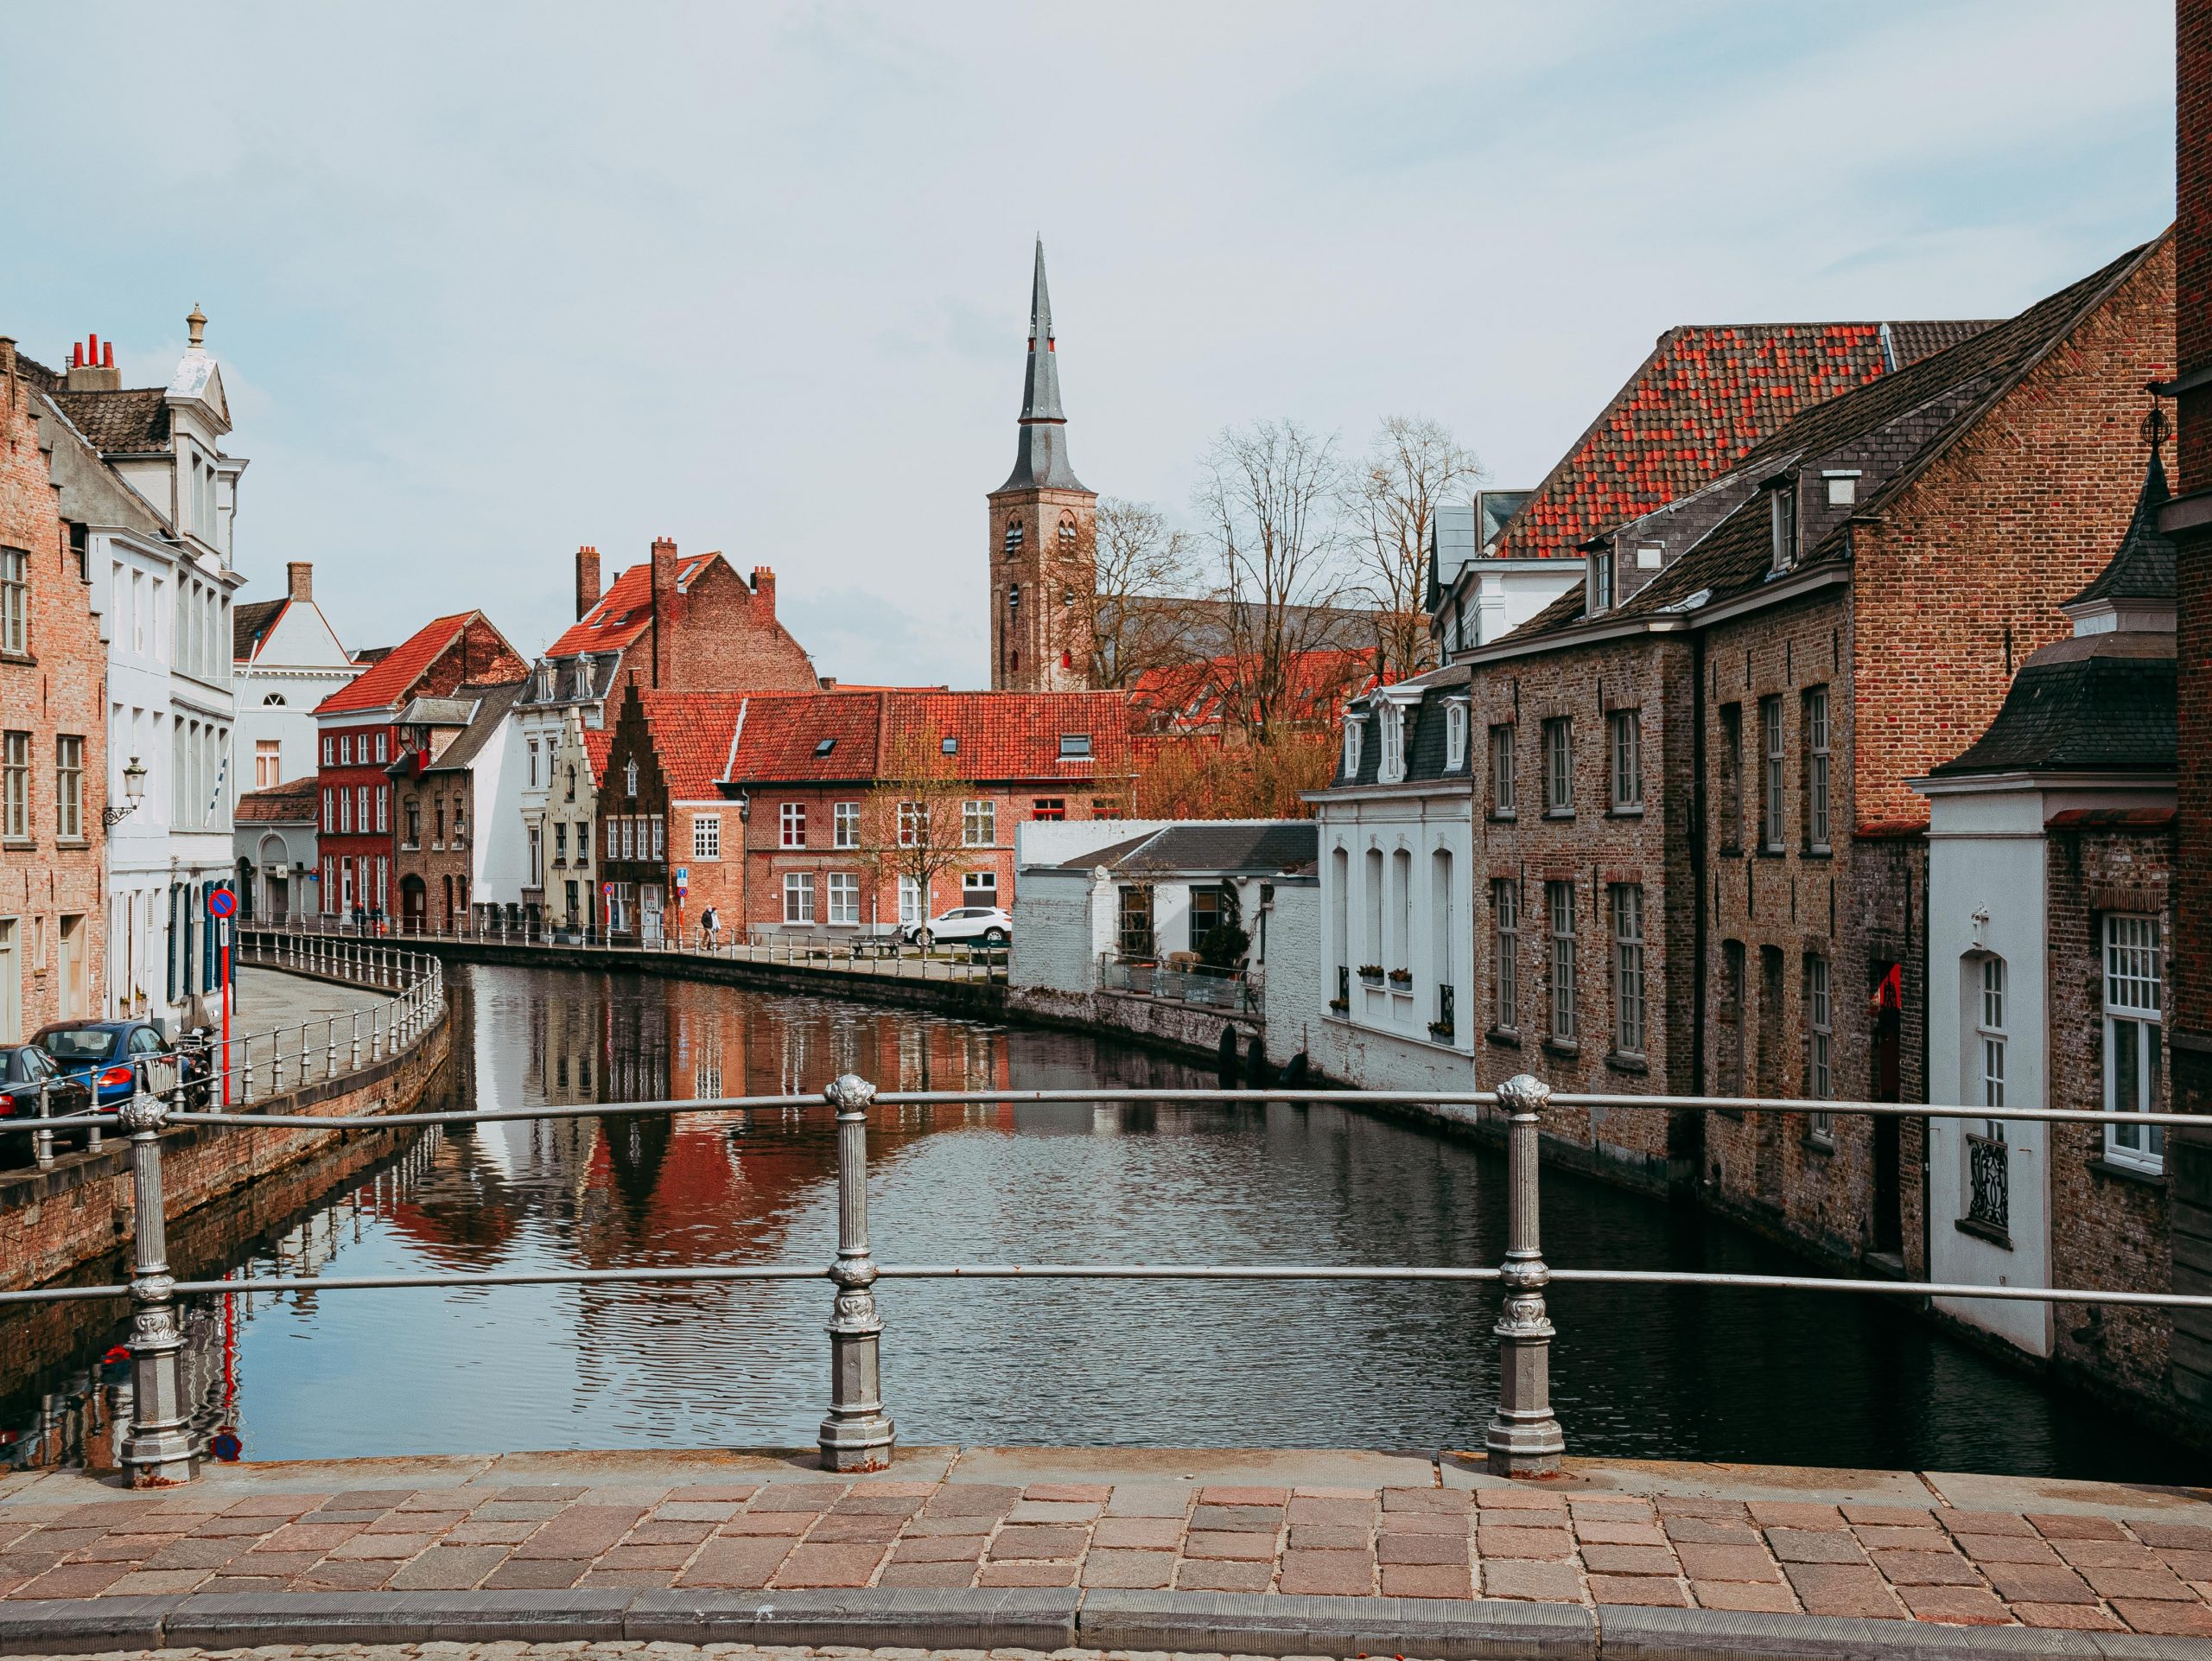 Que faire à Bruges en un jour ?